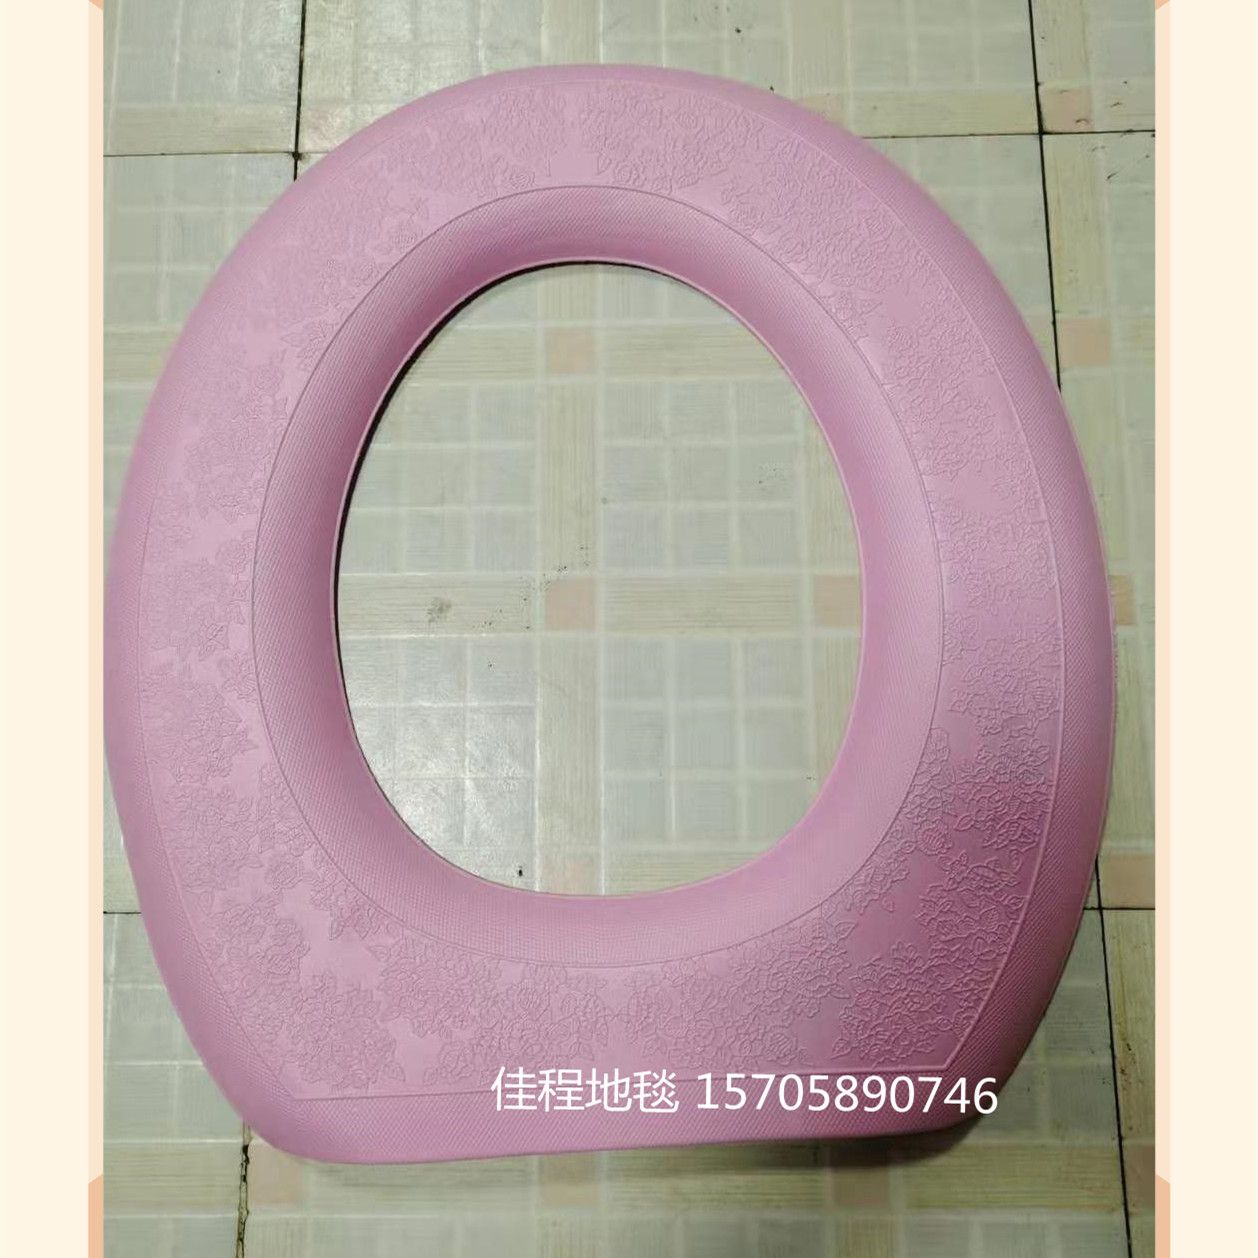 纯色EVA马桶垫 O型 防滑 保暖 EVA泡沫马桶垫 适用于春夏秋冬季节 外贸款详情图4